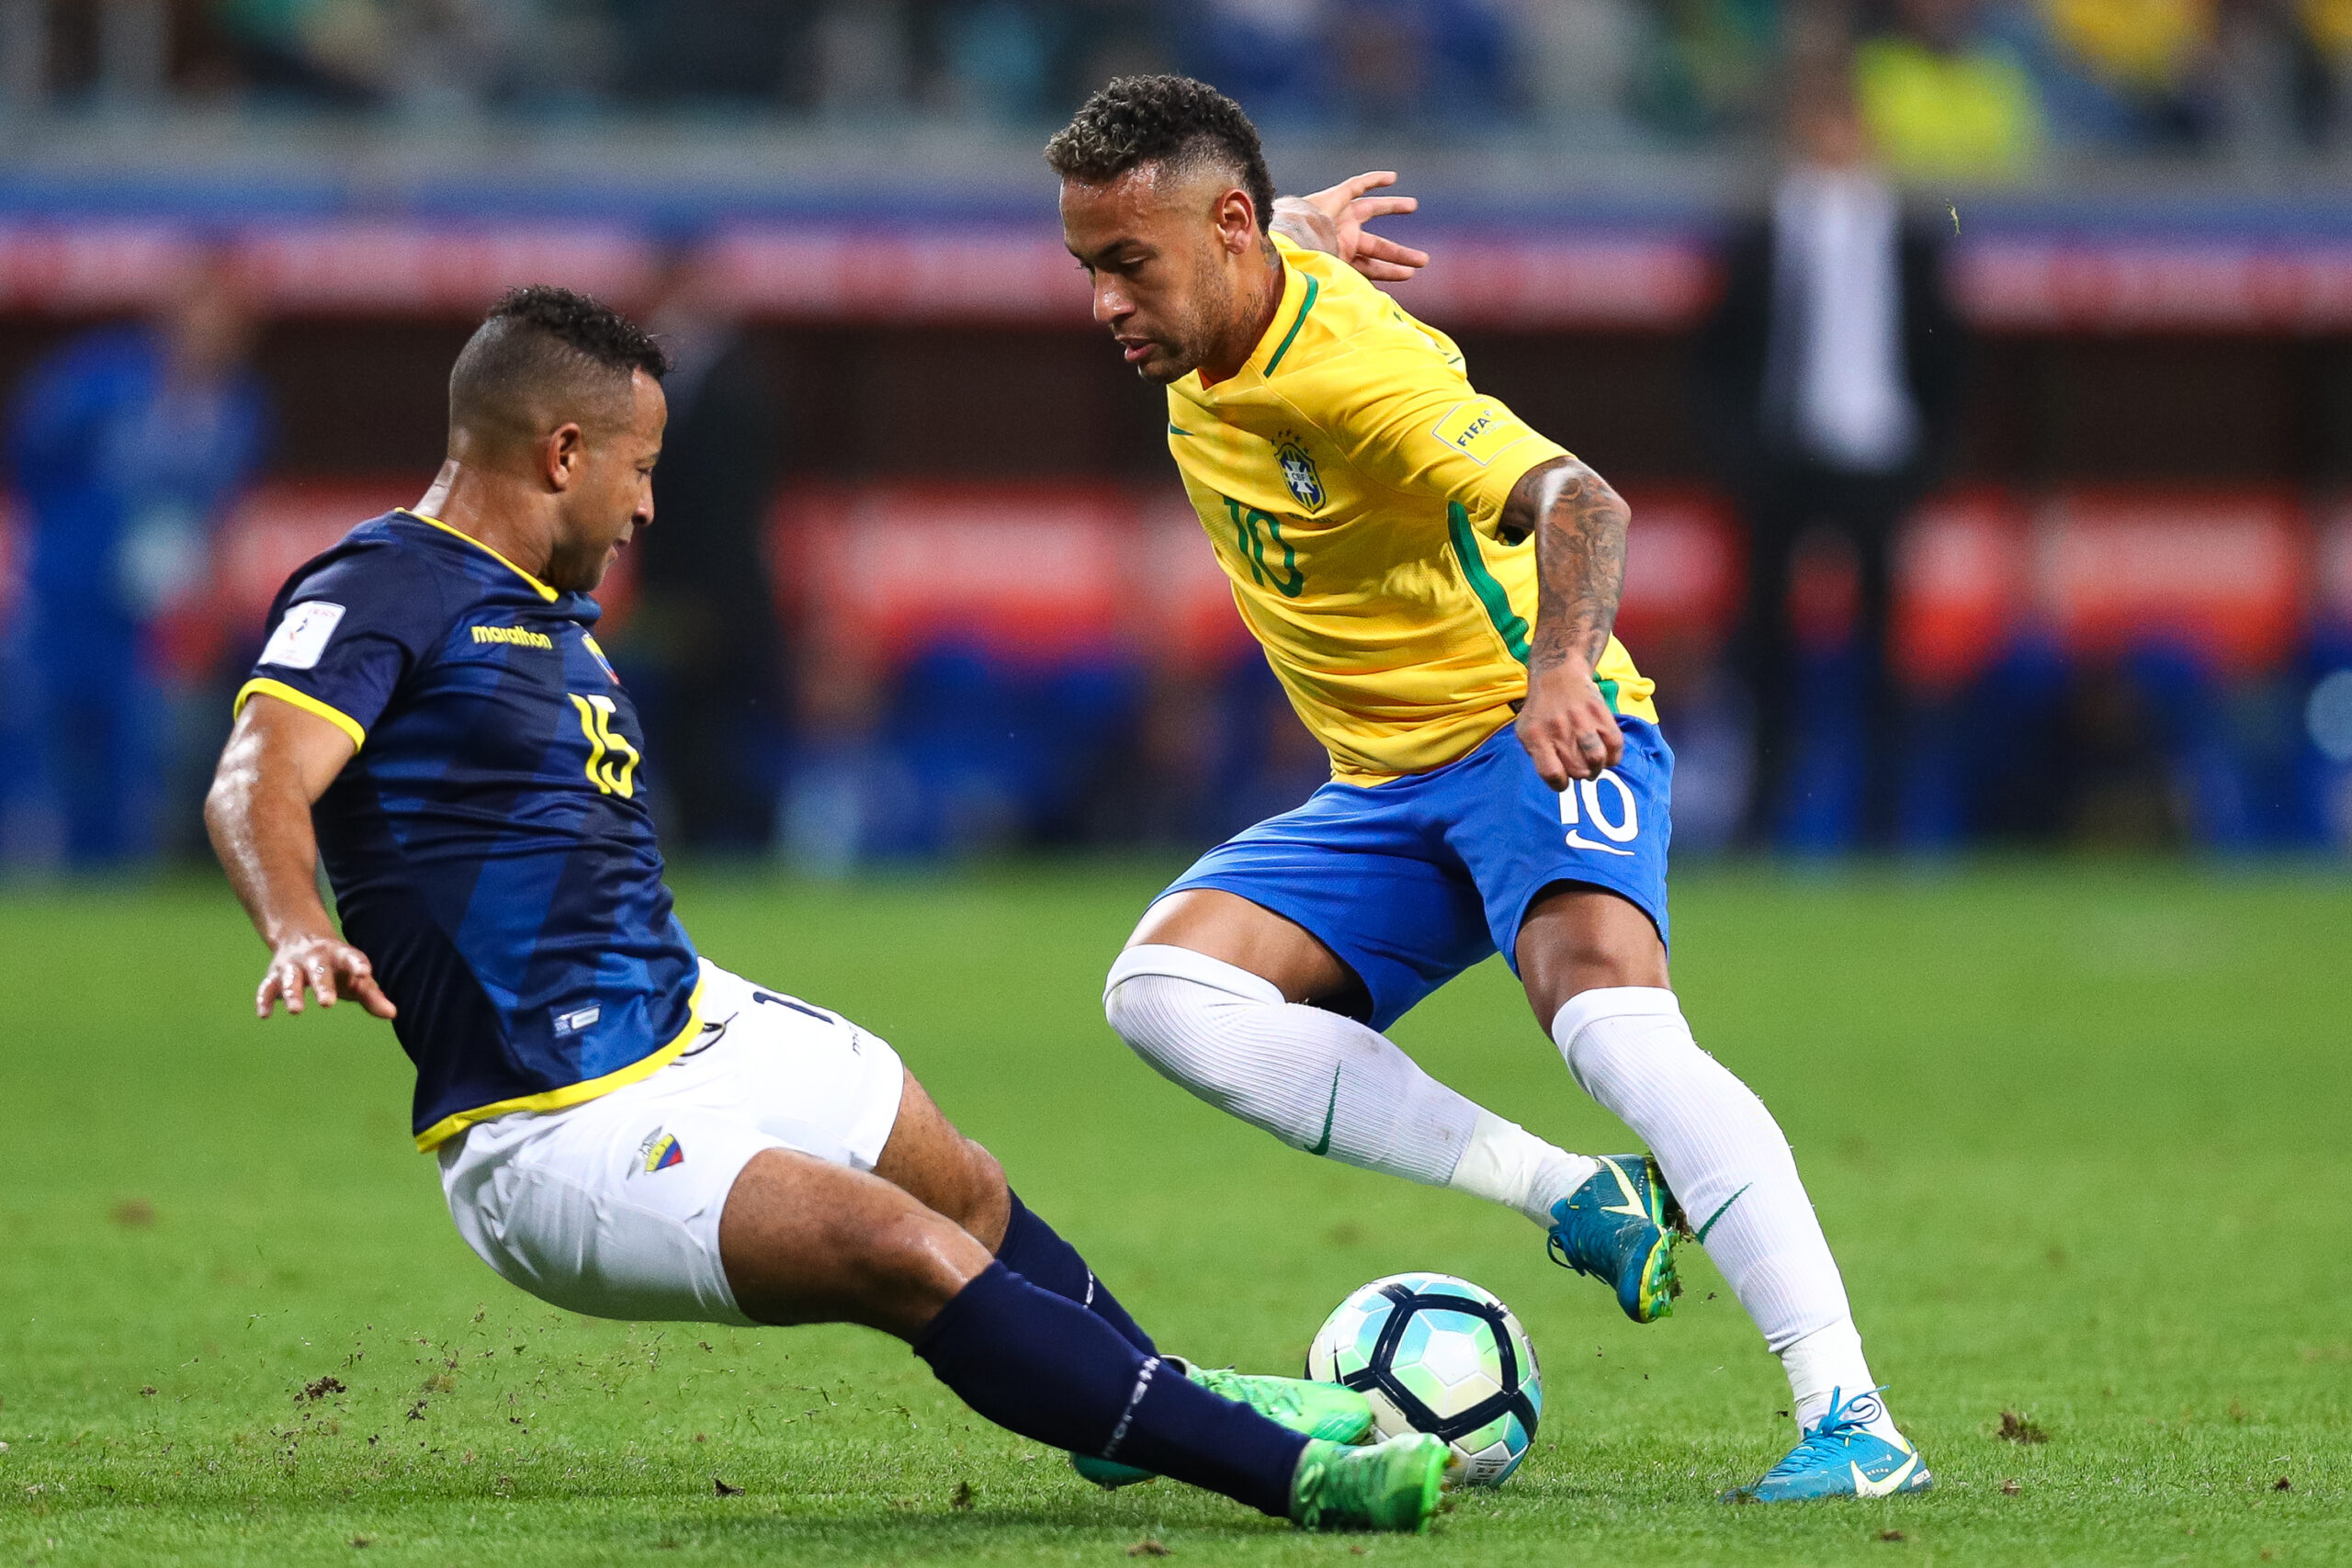 Đội tuyển Brazil khẳng định vị trí đầu bảng đấu khi có chiến thắng thuyết phục